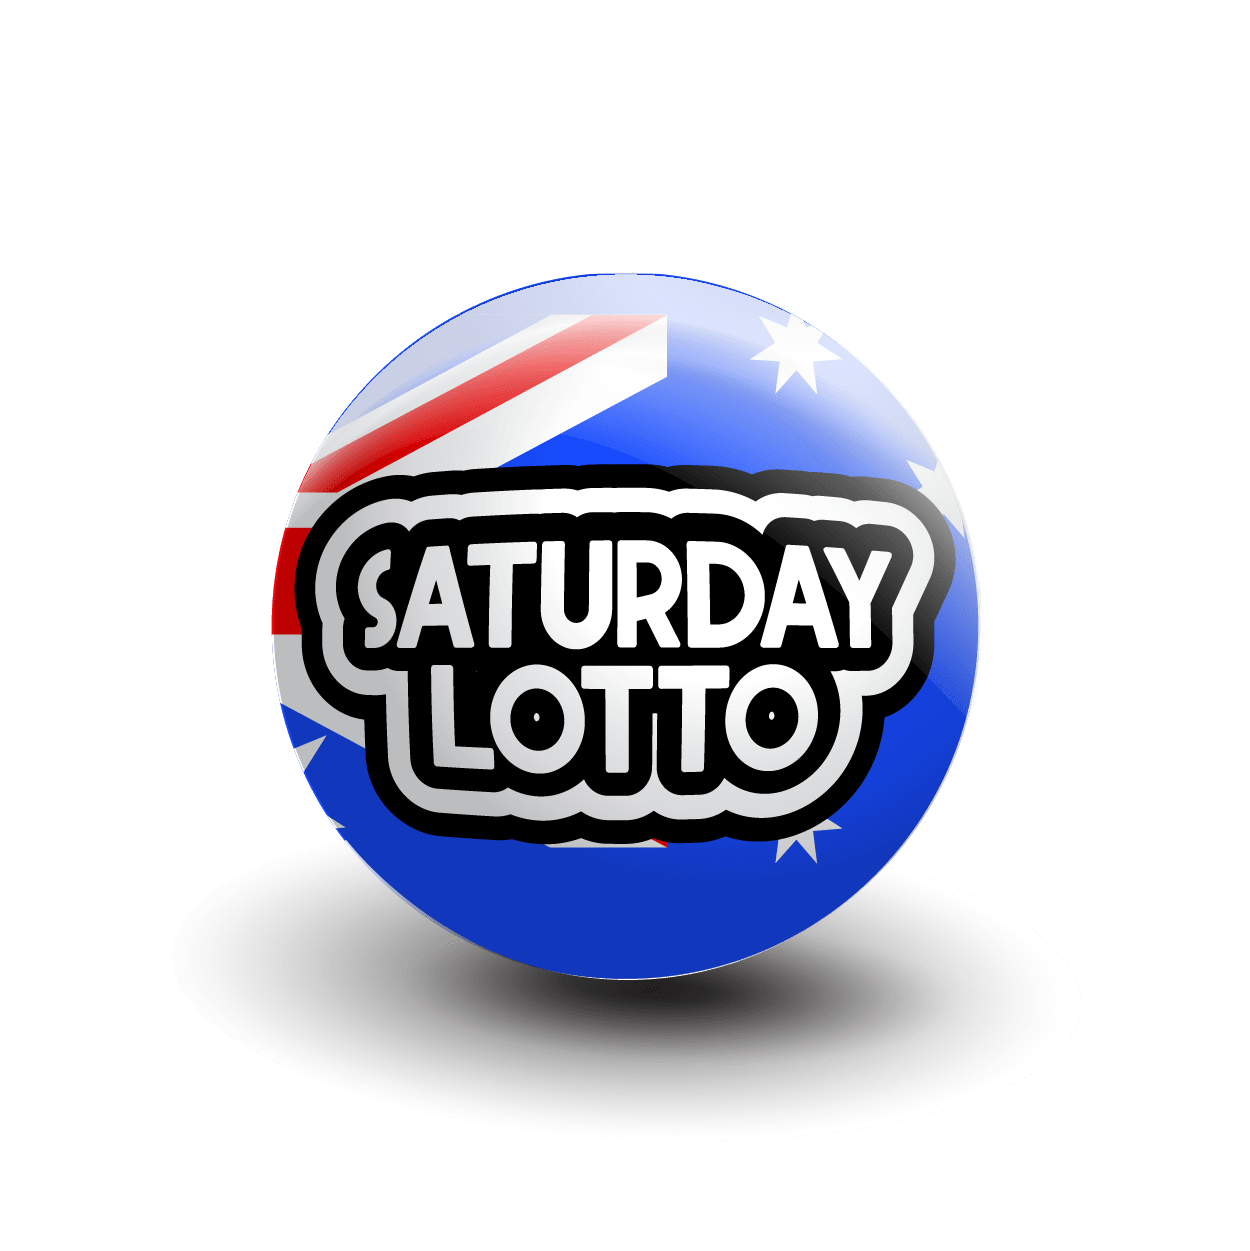 Saturday lotto